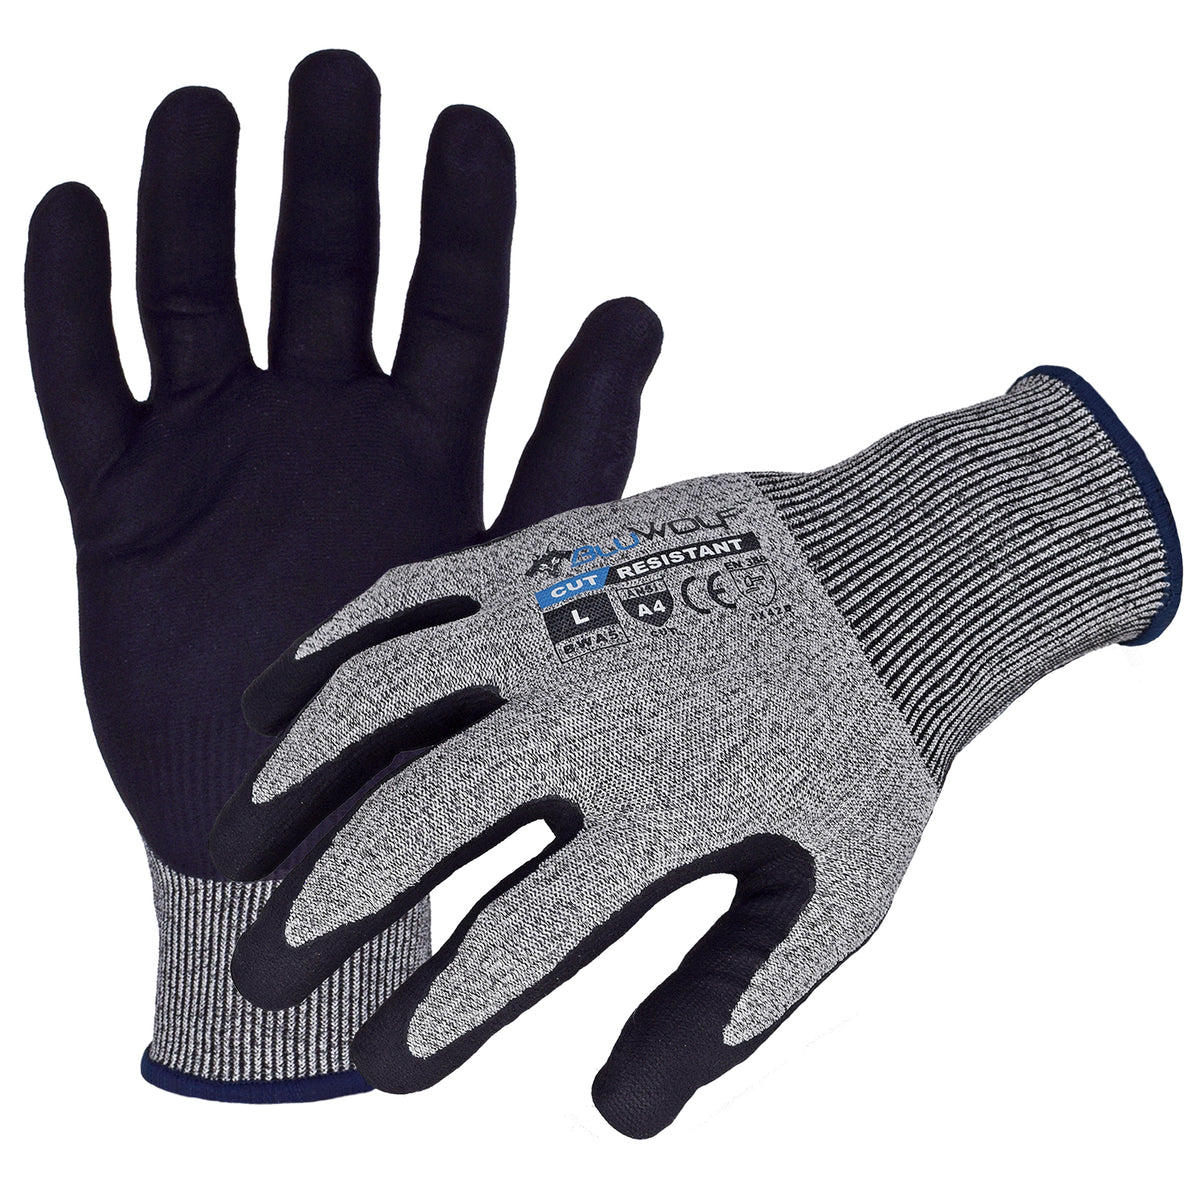 Magid D-ROC Level Cut Resistance Gloves, 50% OFF